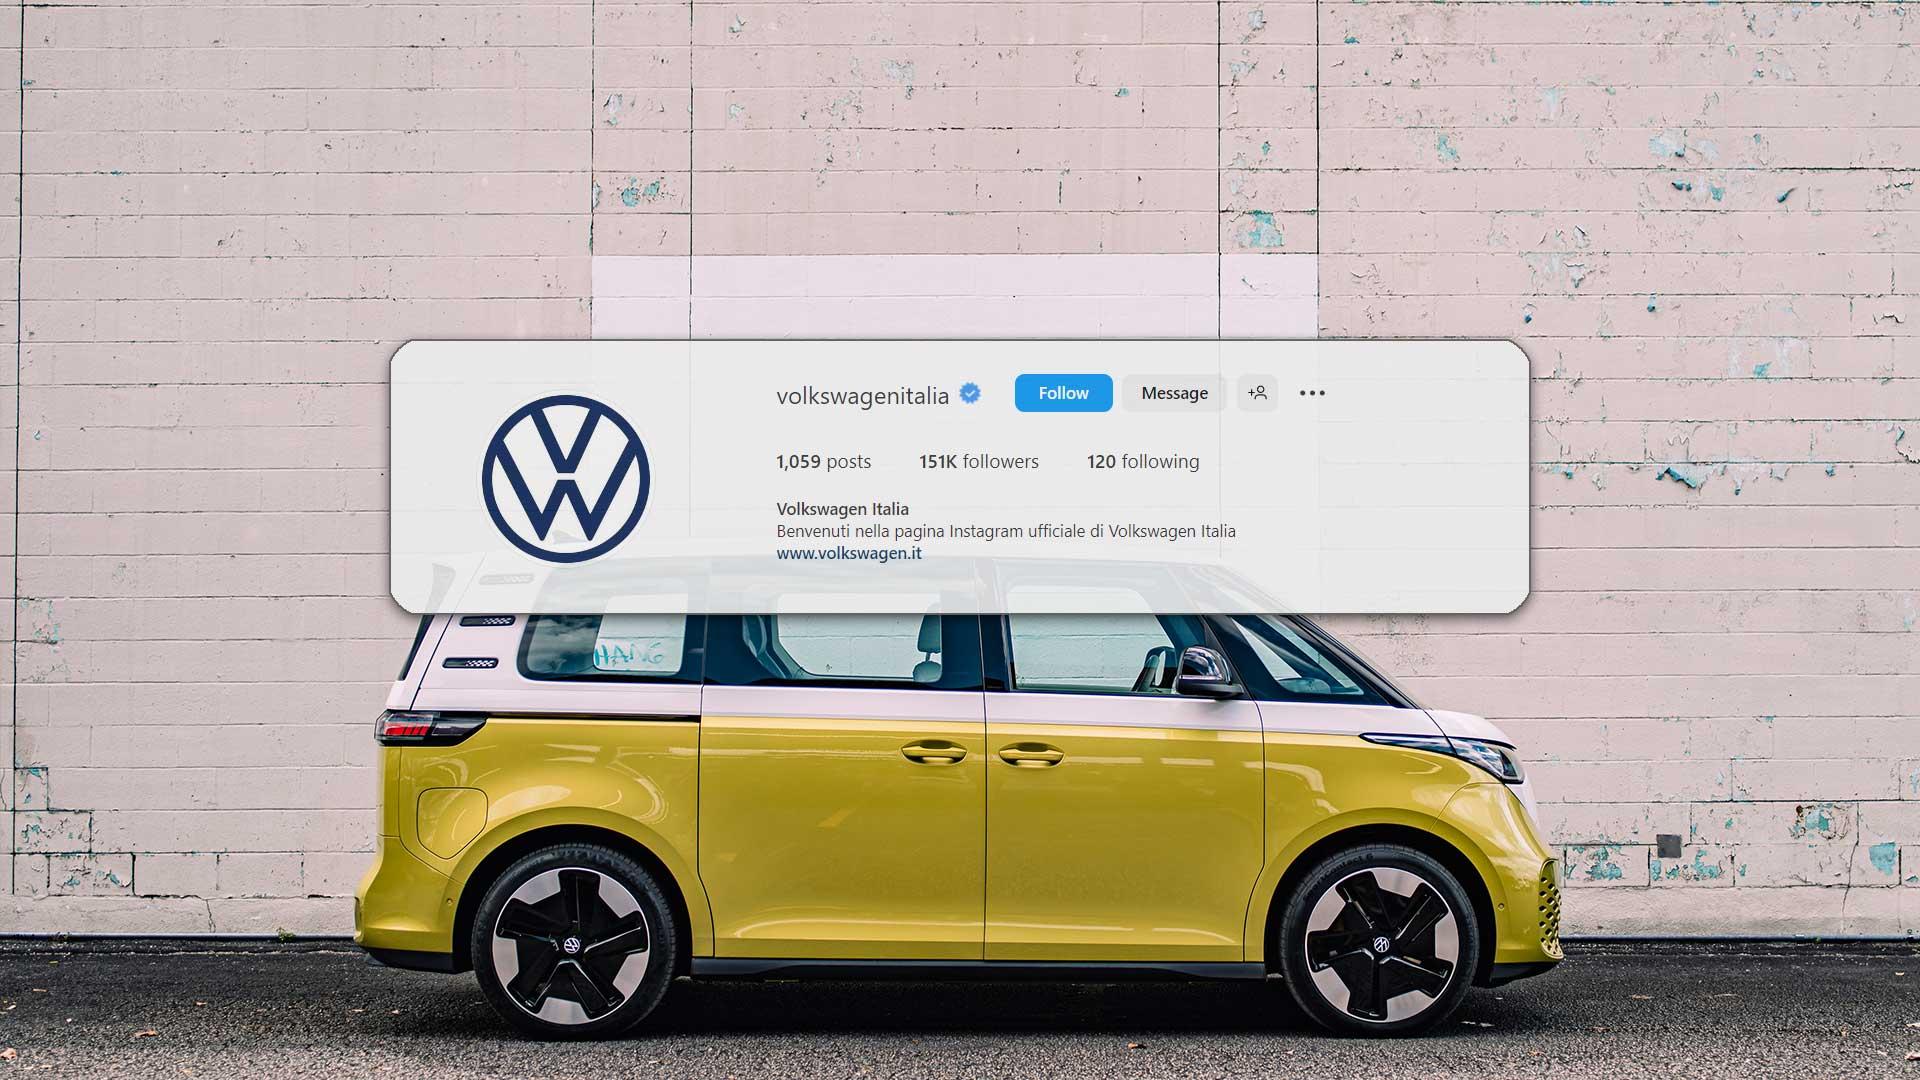 Volkswagen Italia ha un nome sfortunato su Instagram